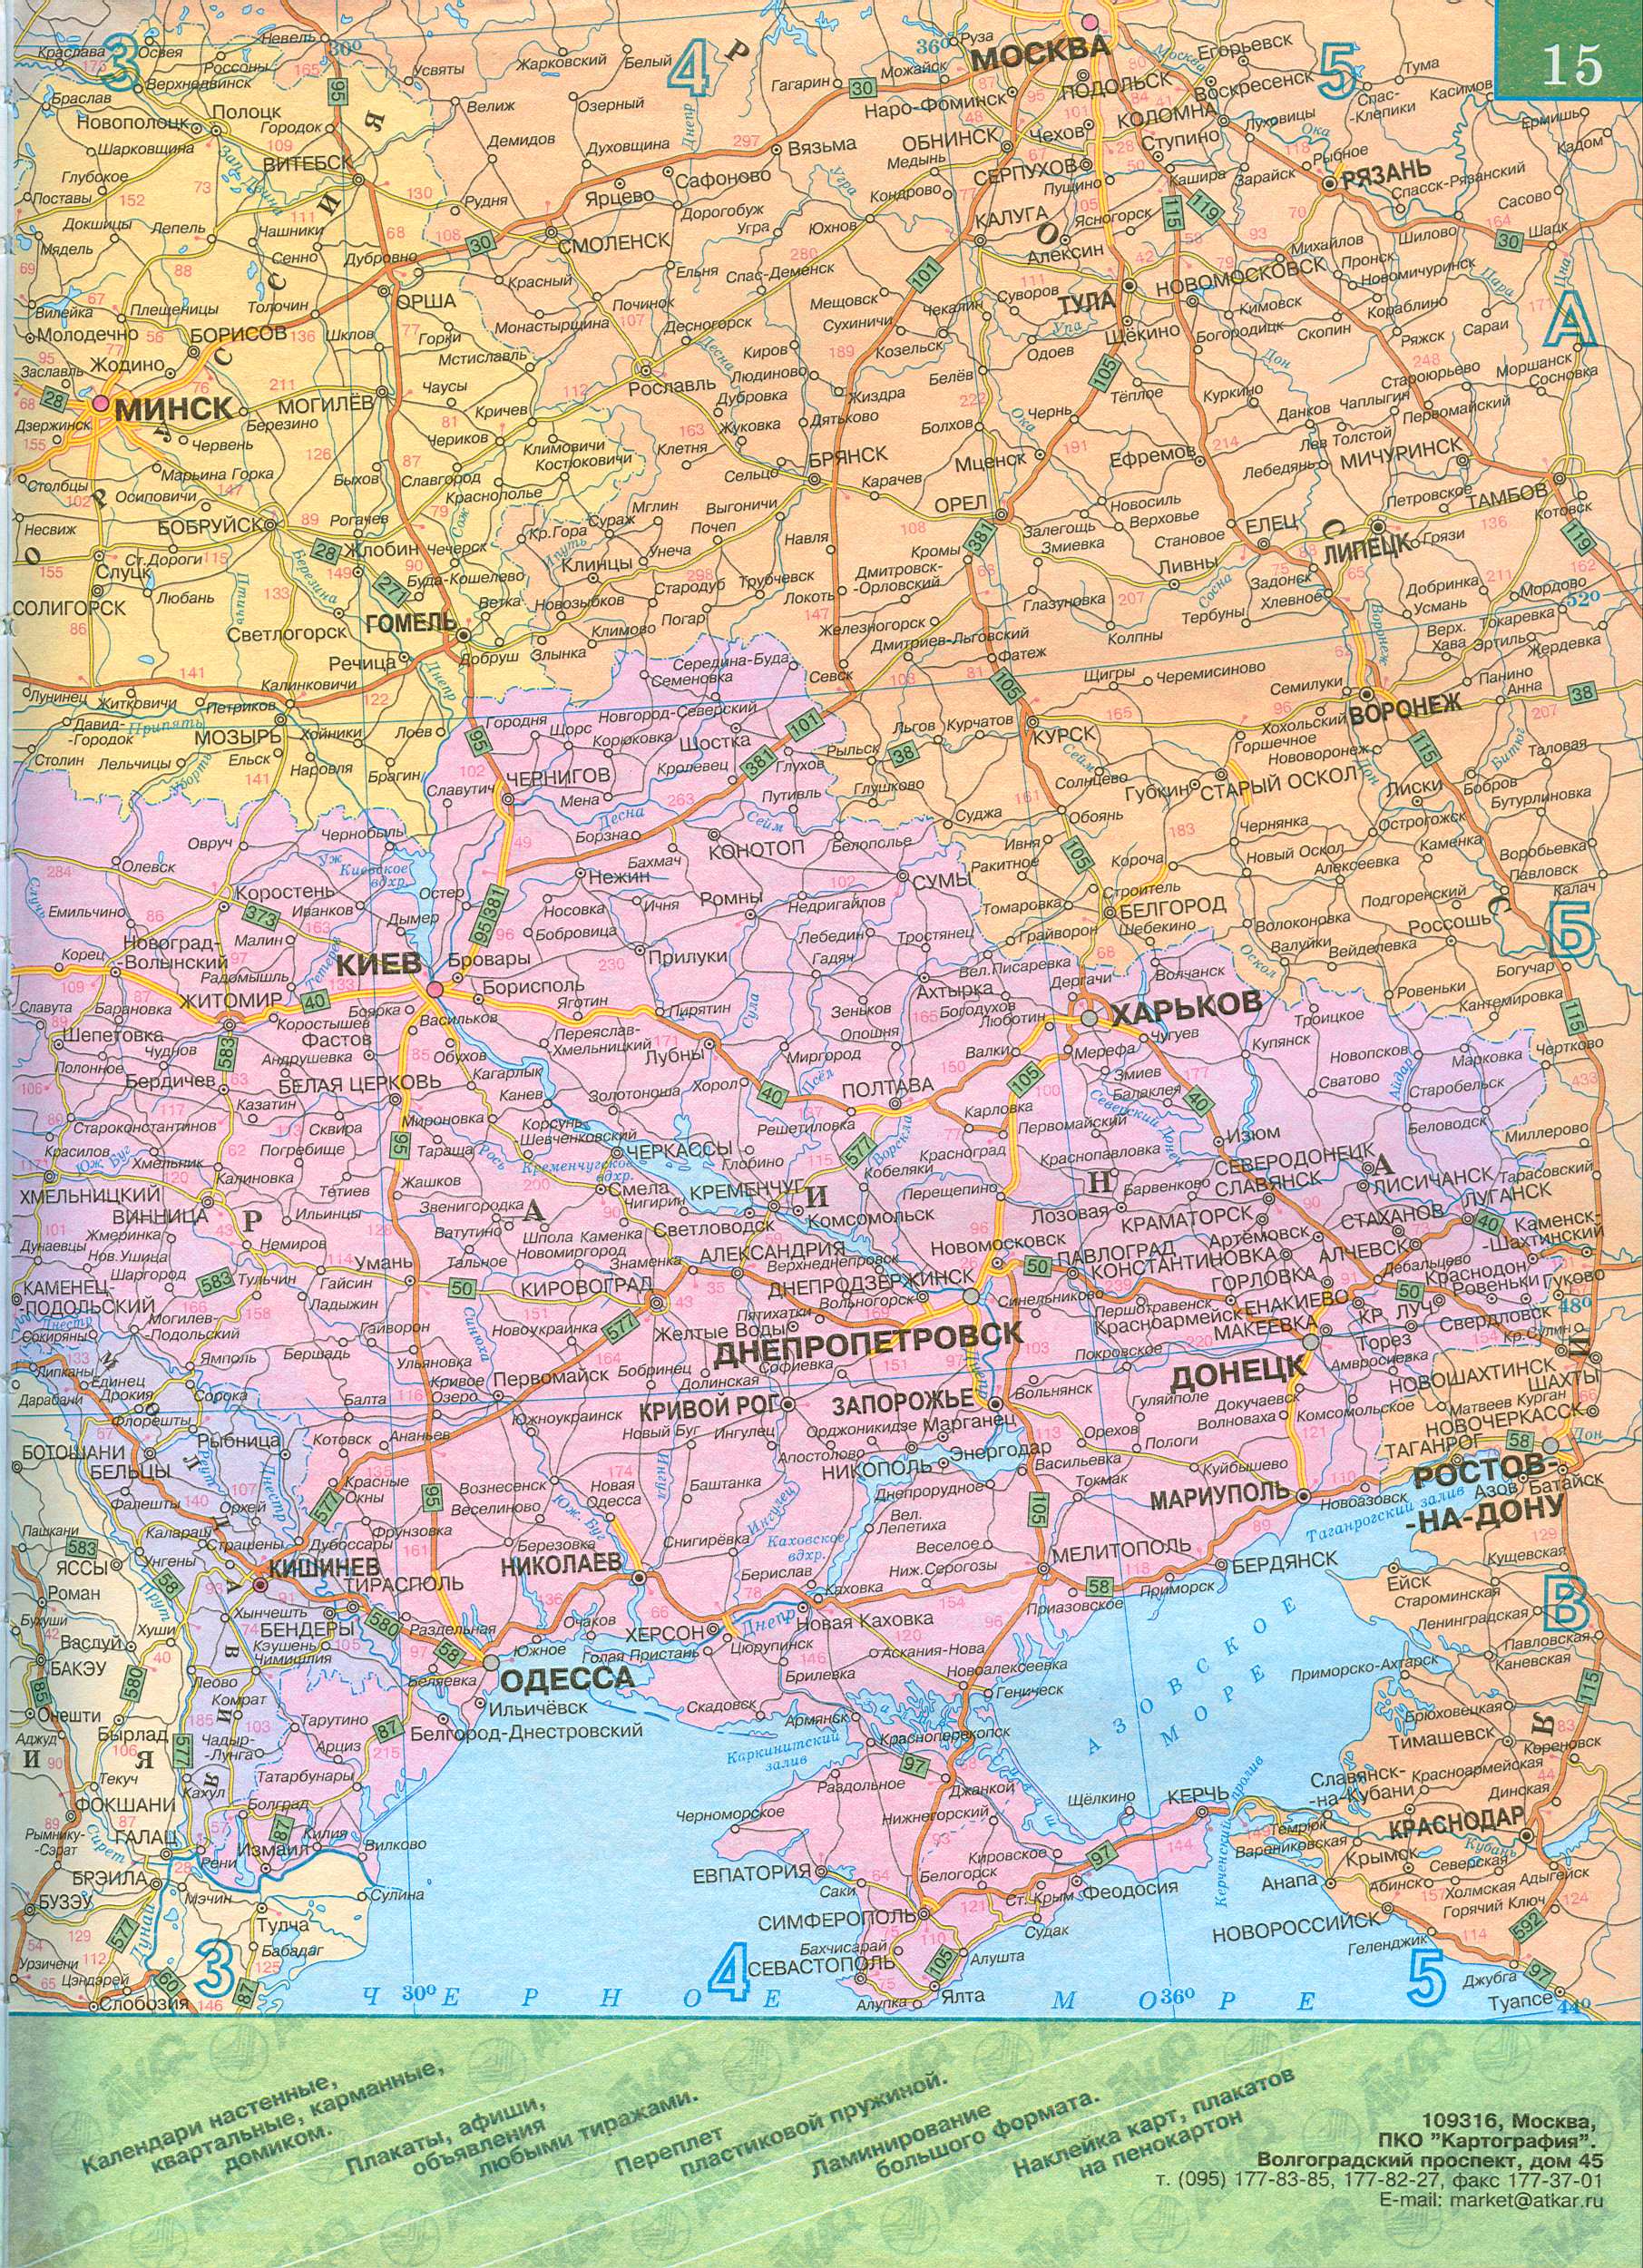 Федеральная трасса М-3 'Украина' от Москвы на Киев. Карта федеральной трассы М-3 'Украина' от Москвы через Калугу, Брянск. Европейская трасса E101, A0 - 